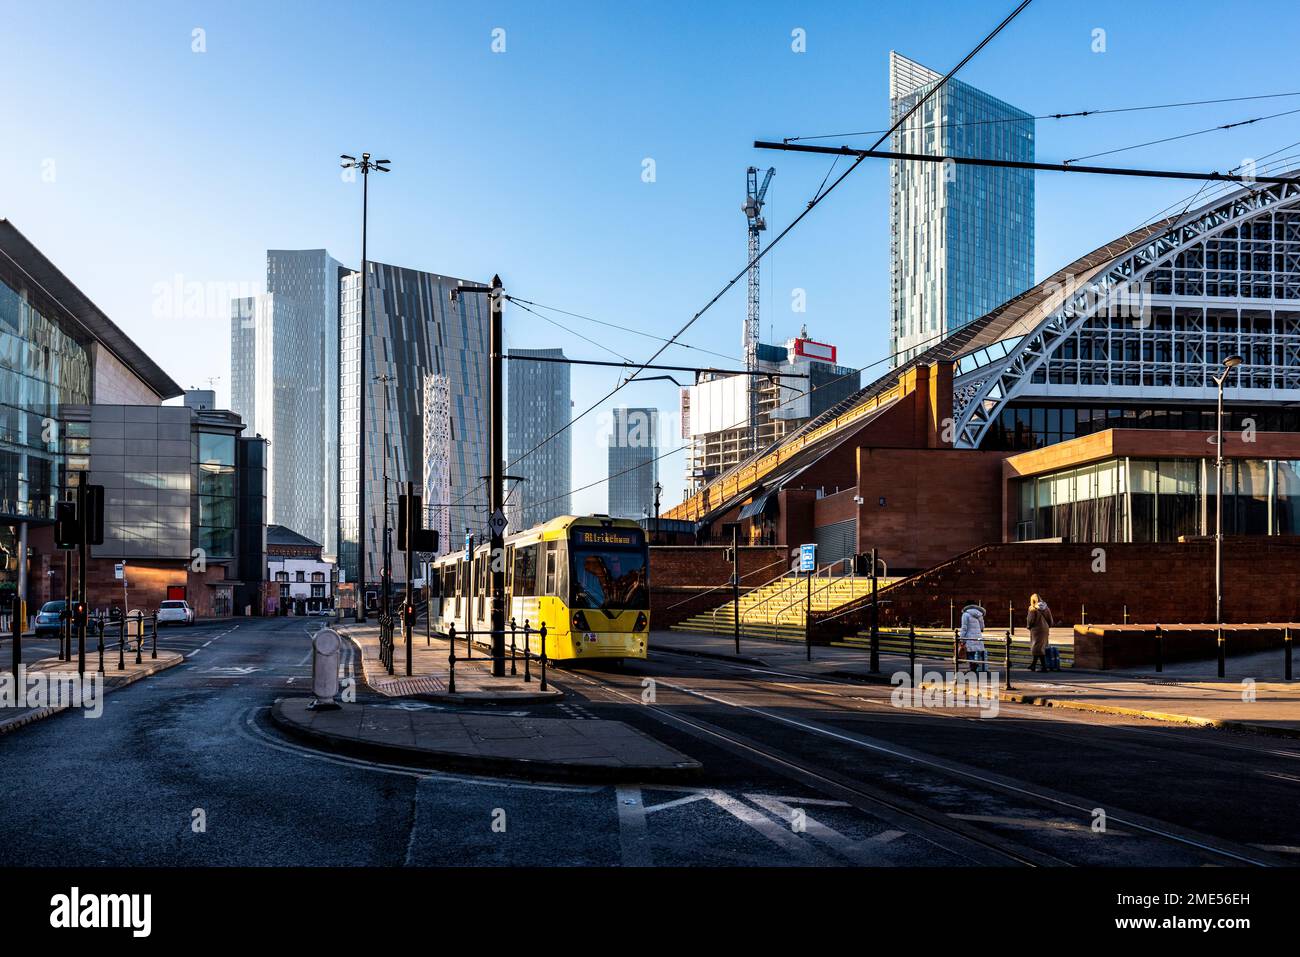 Regno Unito, Inghilterra, Manchester, funivia passando strada con grattacieli del centro in background Foto Stock